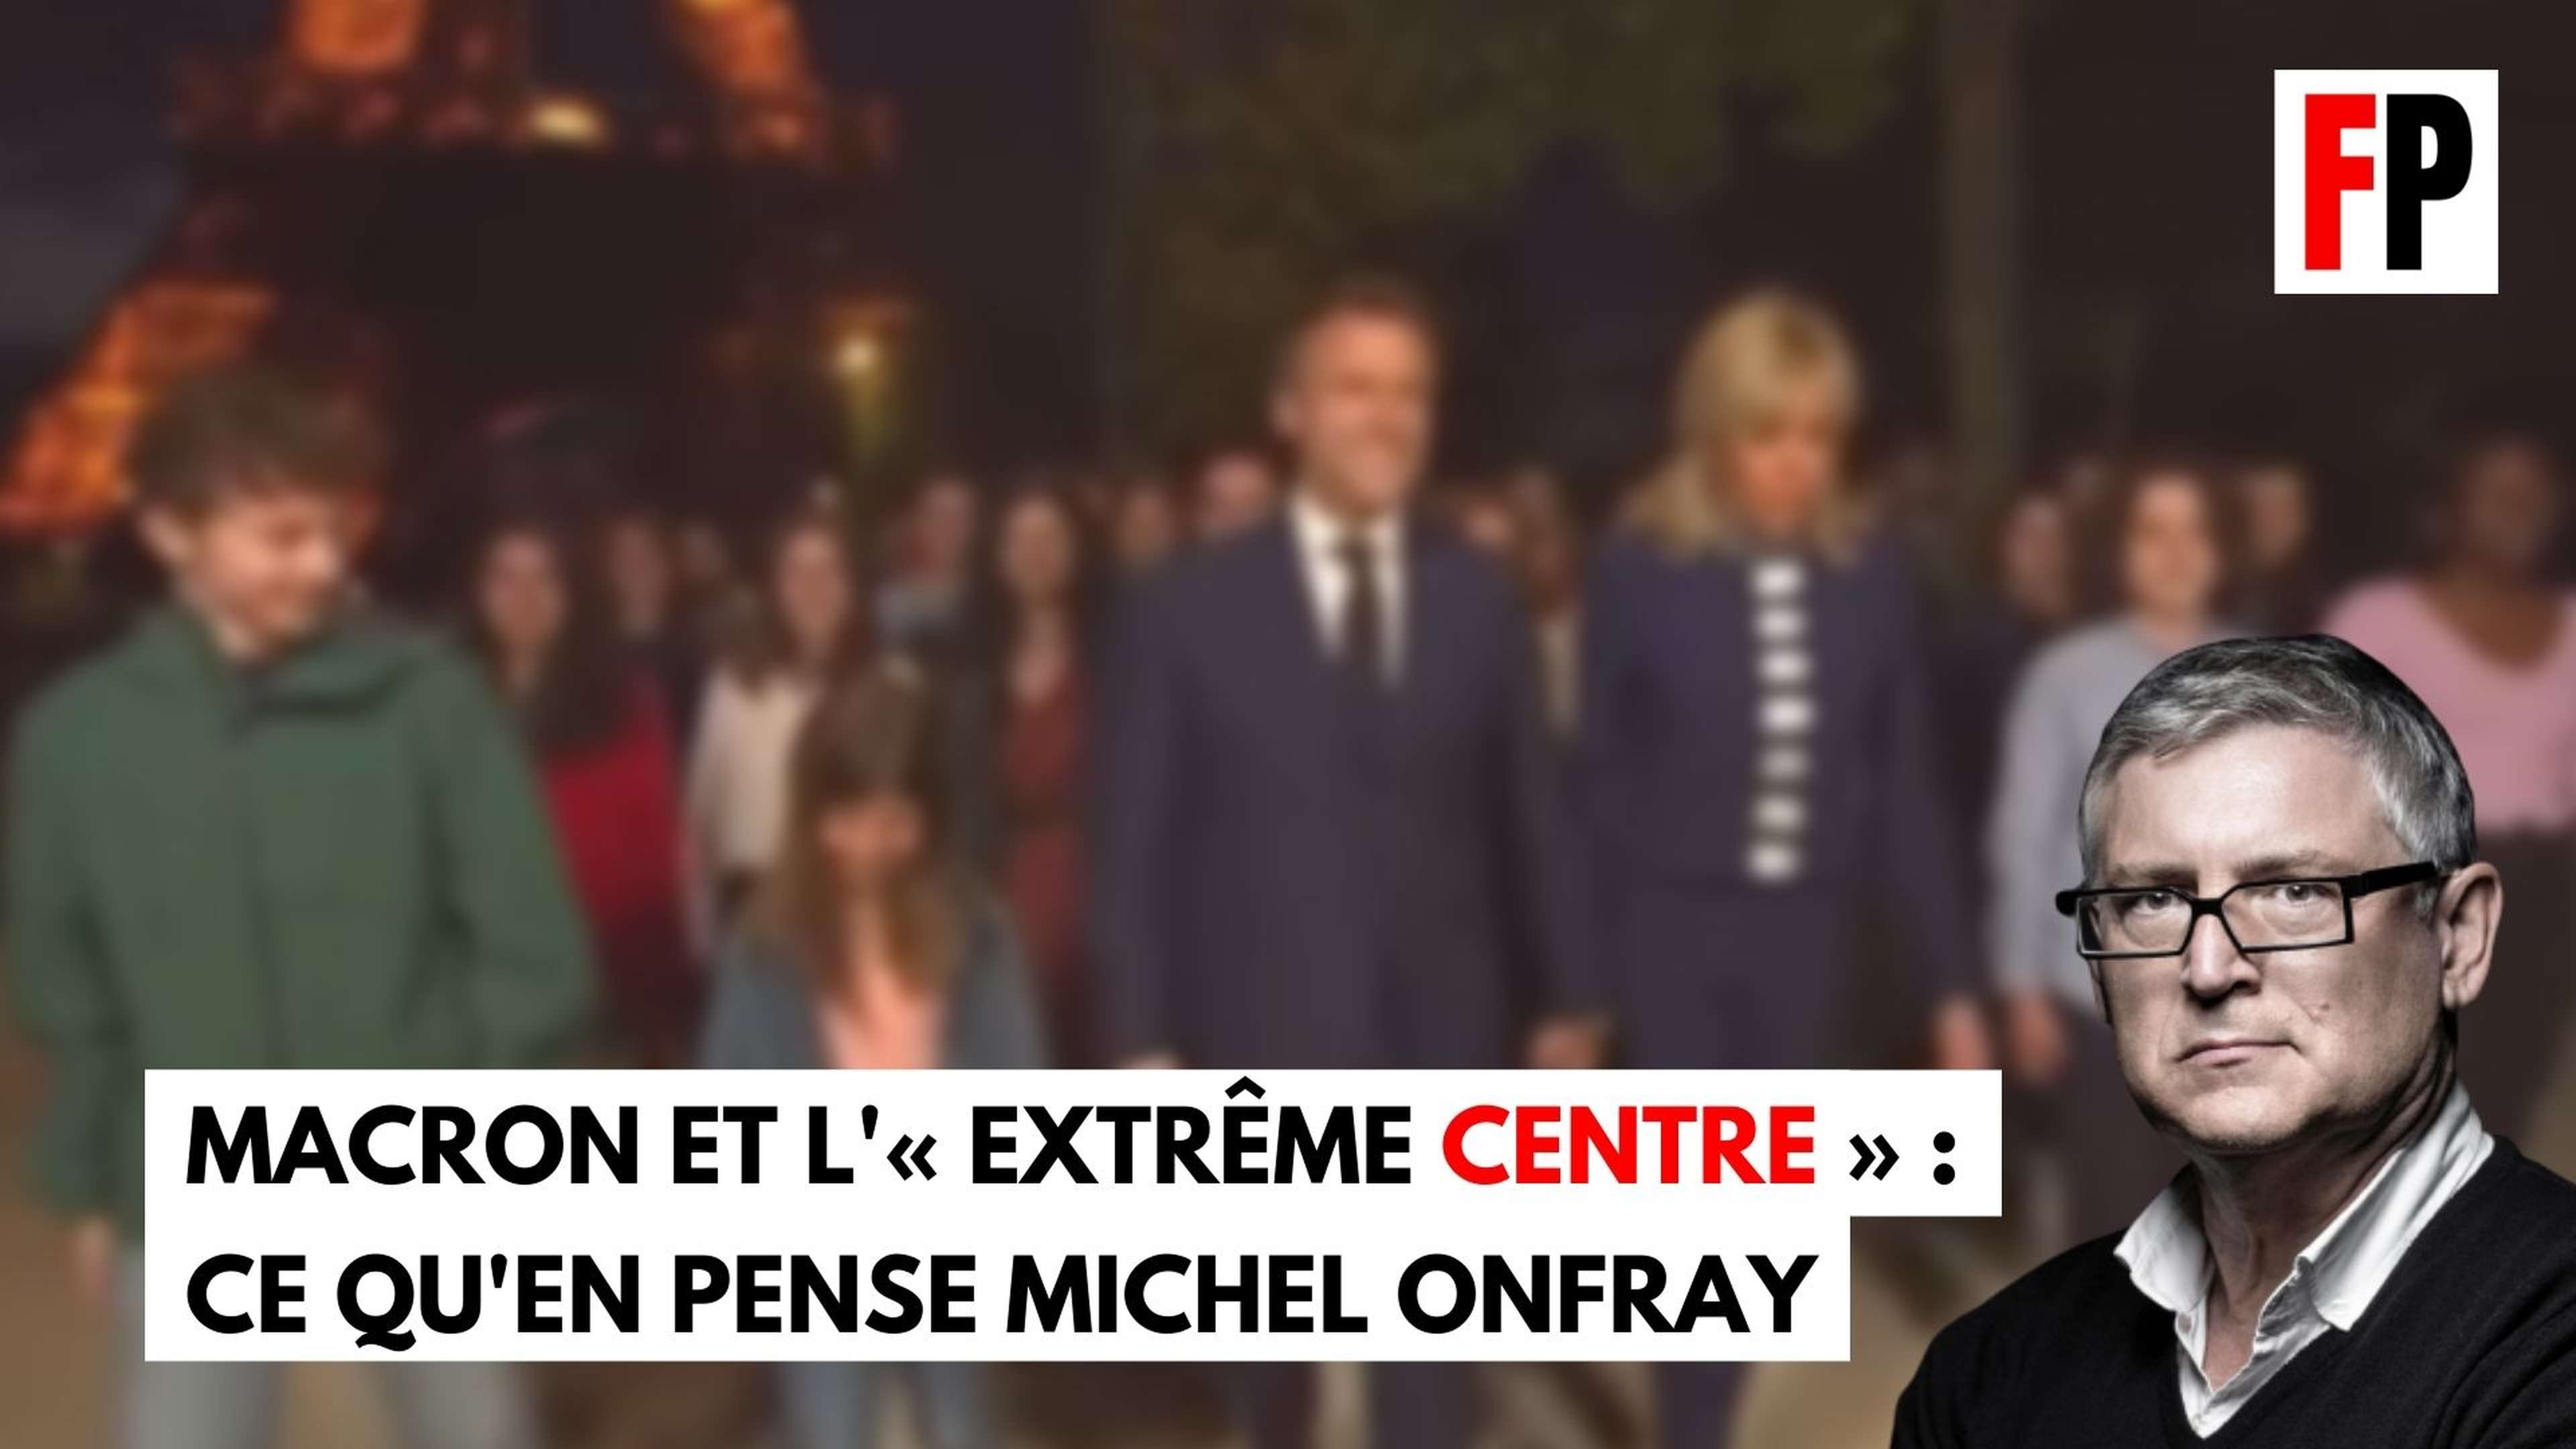 Ce que pense Michel Onfray de l'étiquette "extrême centre" revendiquée par Macron